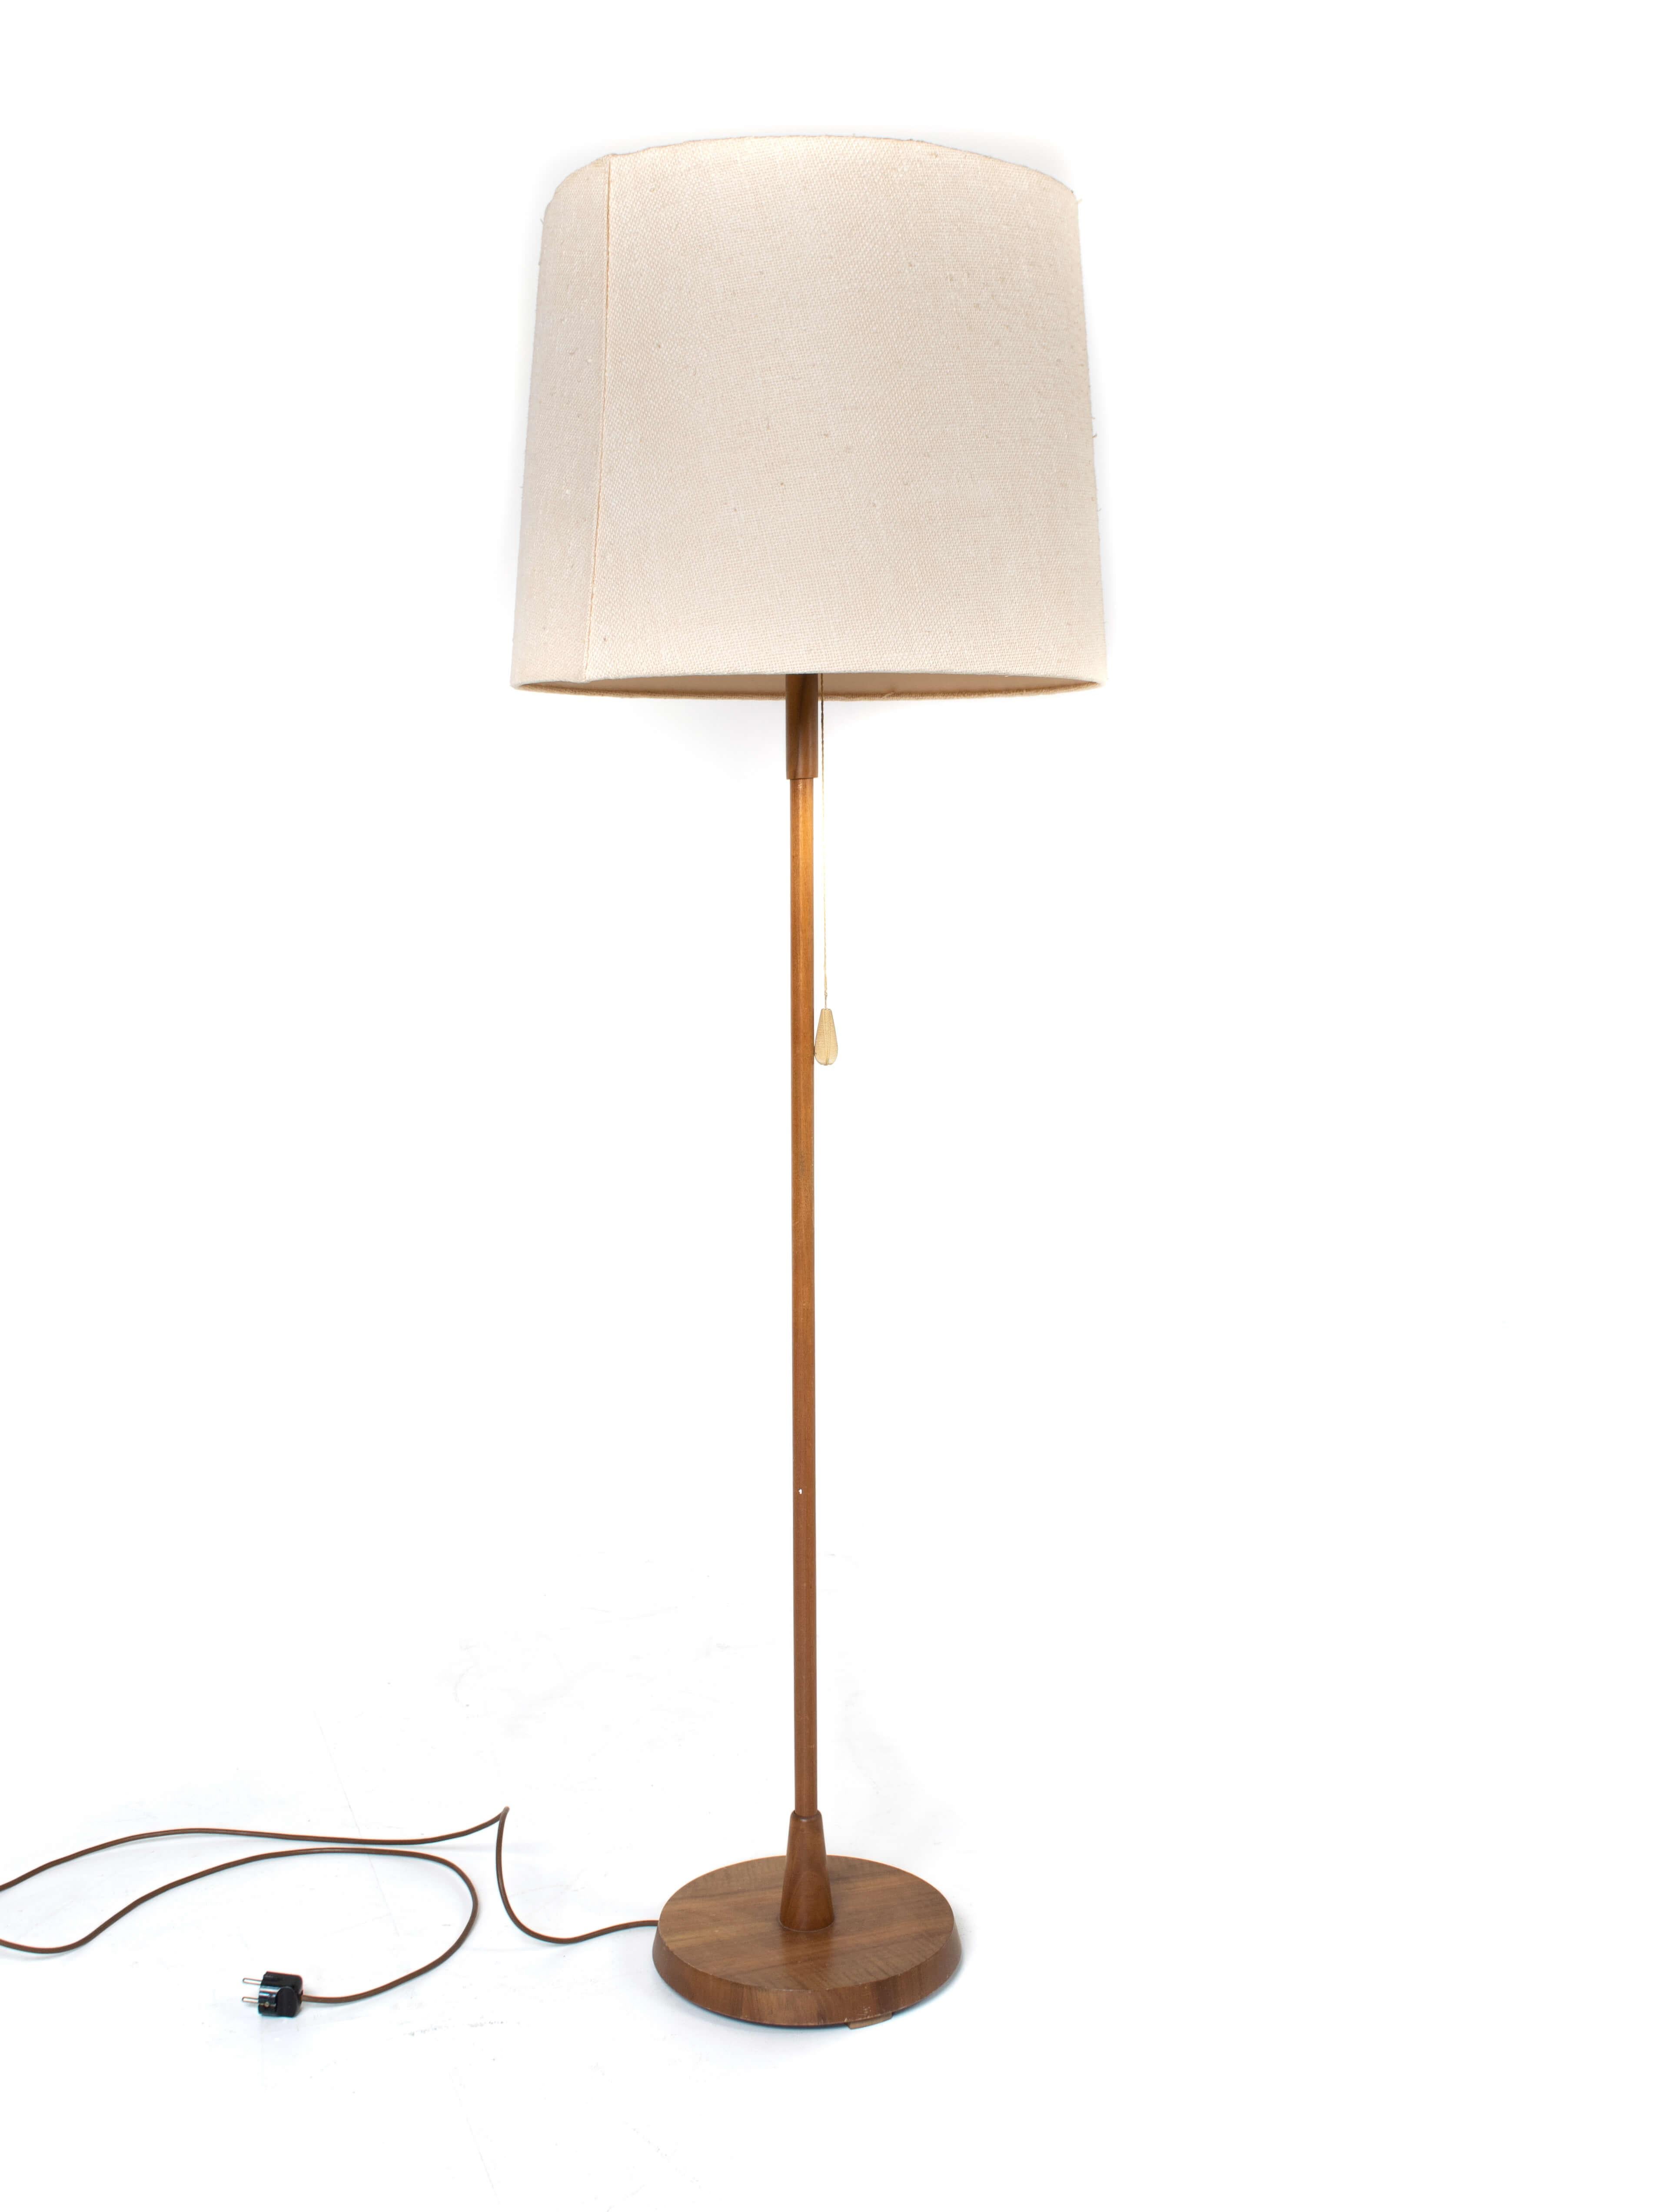 Temde Stehleuchte aus Teakholz und Stoff aus Deutschland, 1970er Jahre. Diese Lampe hat einen Sockel aus Teakholz und eine Stoffhaube mit Reispapier darüber. Die Lampe kann mit einem Metallmechanismus in zwei Höhen verstellt werden. Auf der